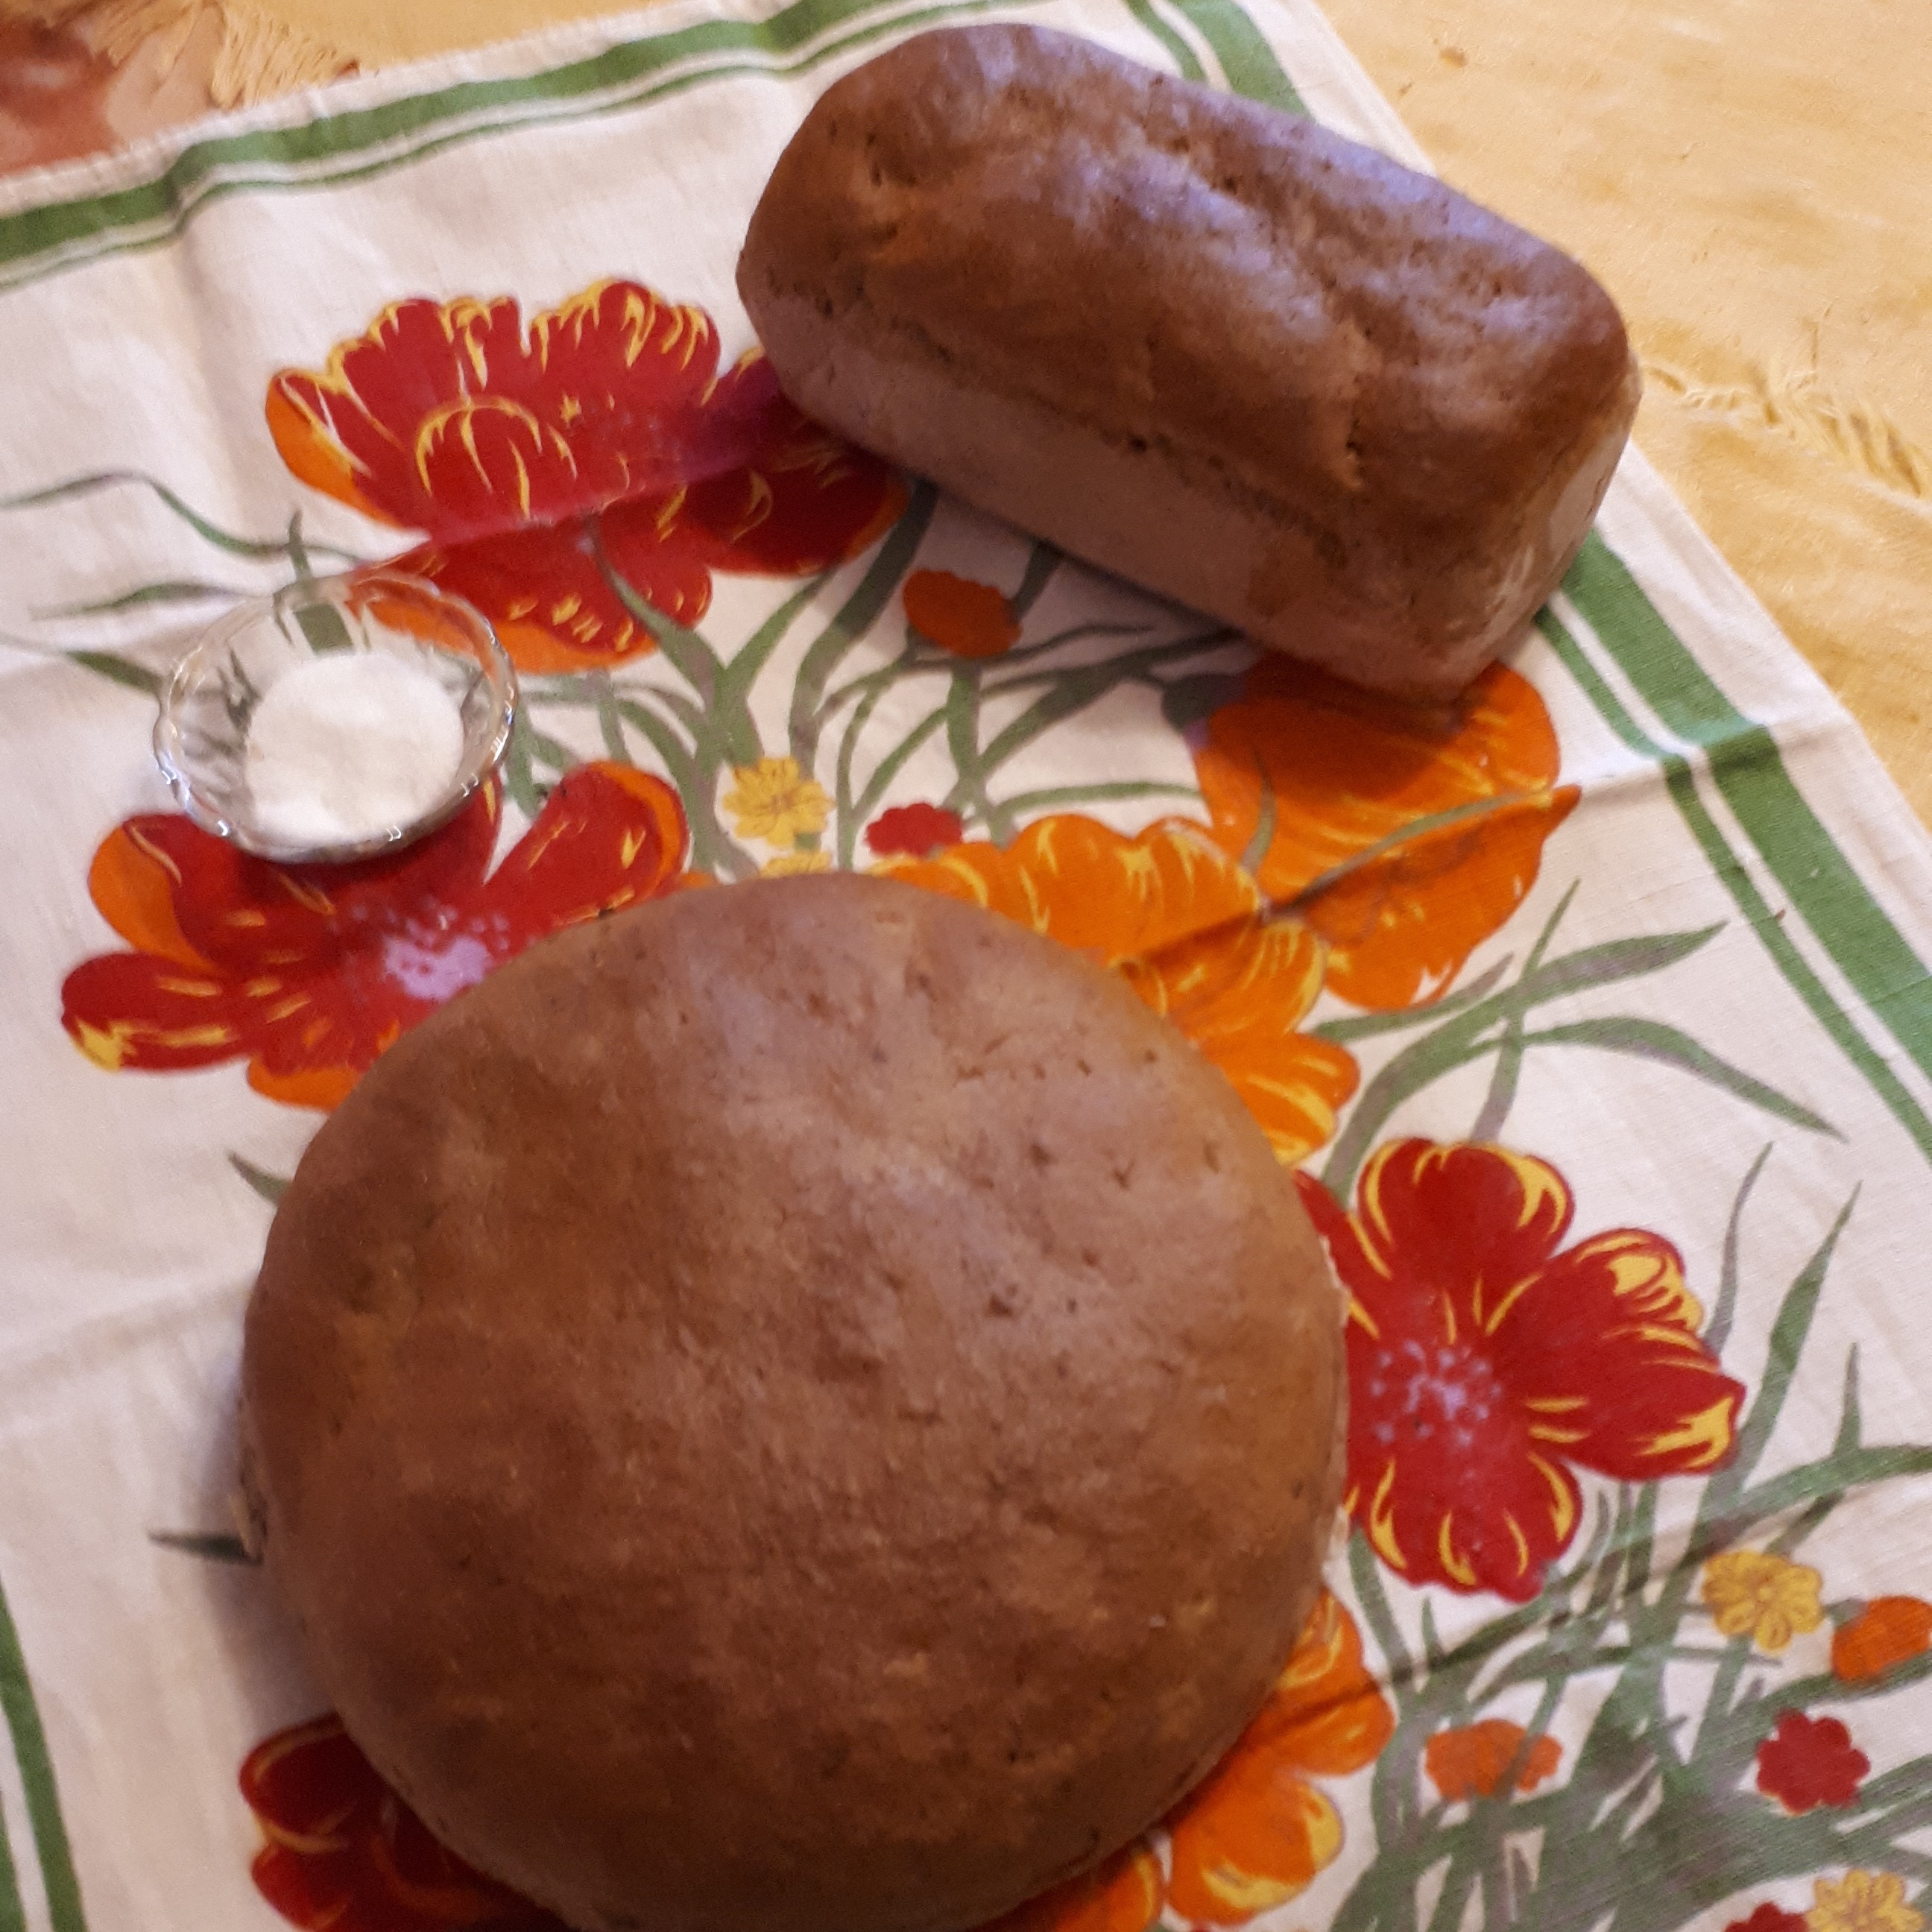 Ржаной хлеб на пахте (маслянке) с тмином, кориандром и изюмом